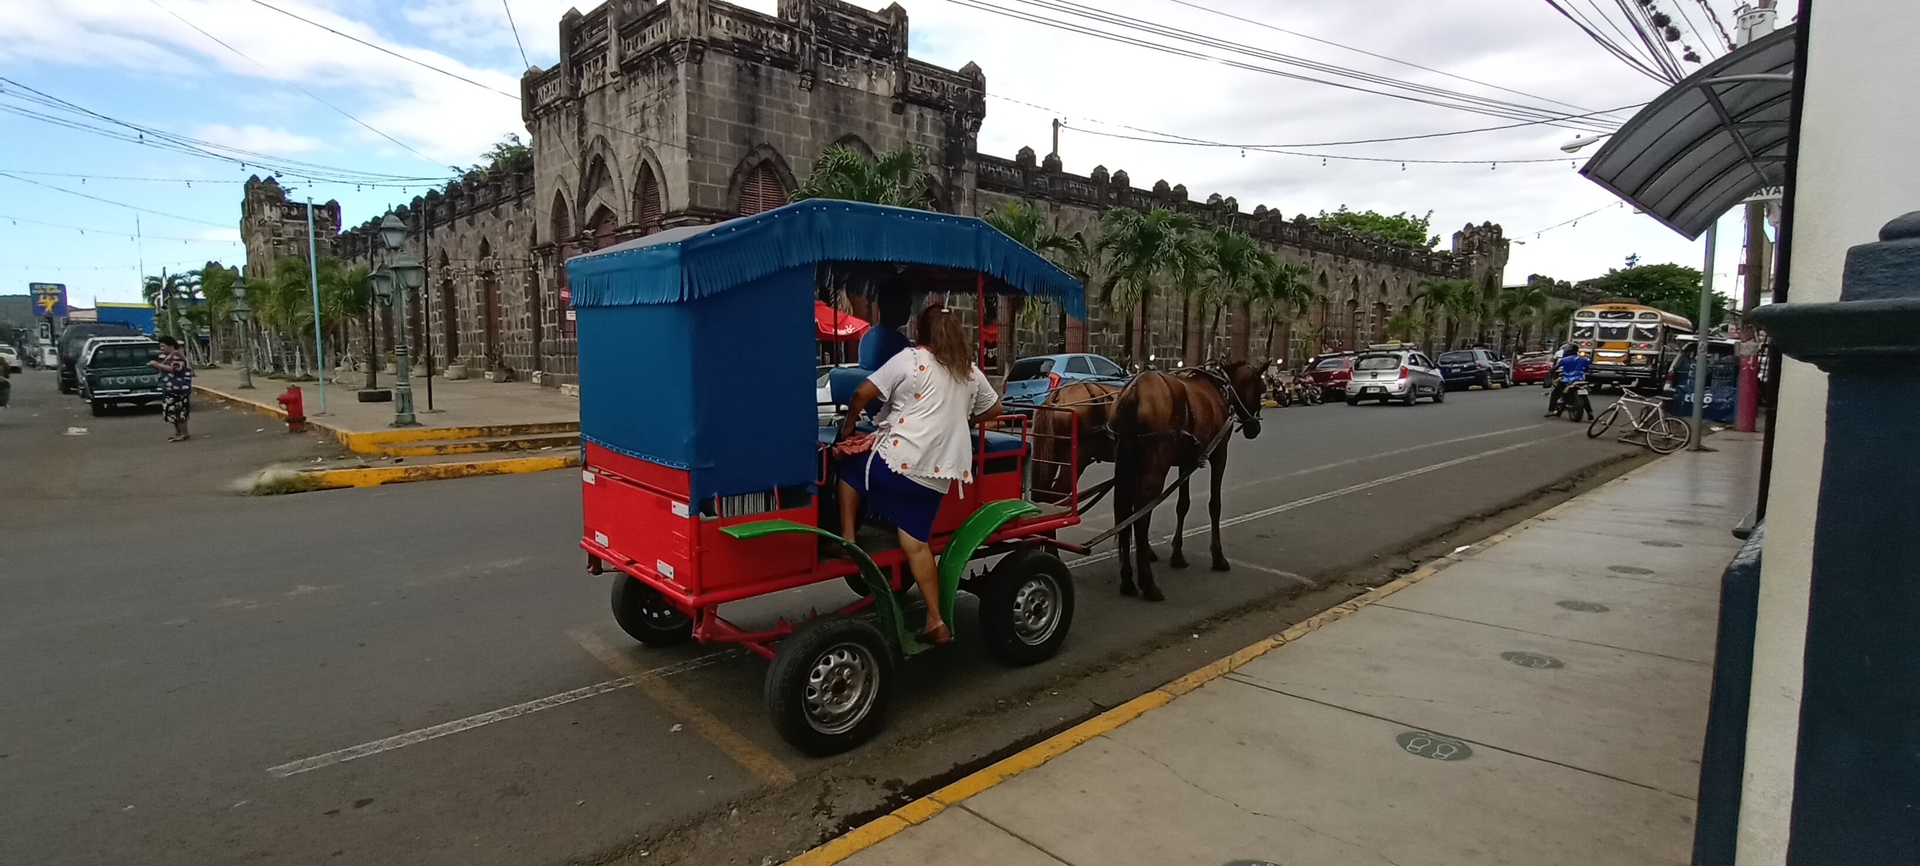 Los coches de caballos recorren la ciudad de Masaya y cuentan con estacionamiento en el mercado central Ernesto Fernández.